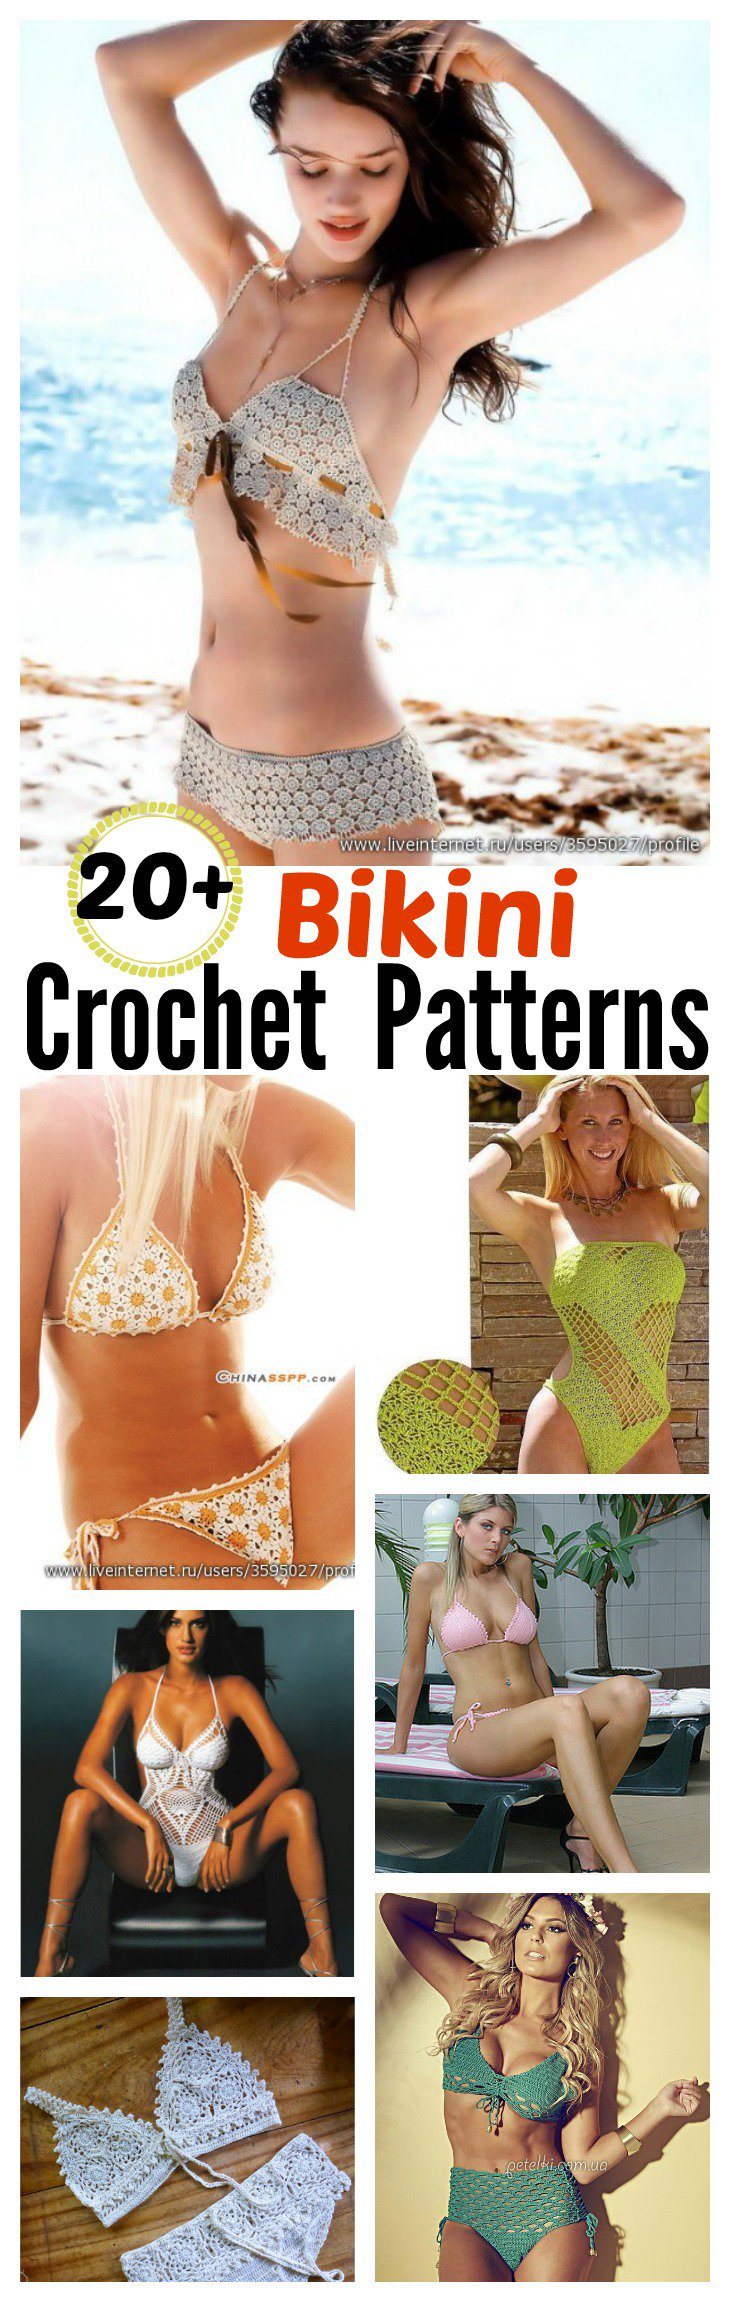 Free Crochet Bikini Pattern 20 Free Crochet Bikini Patterns Page 3 Of 3